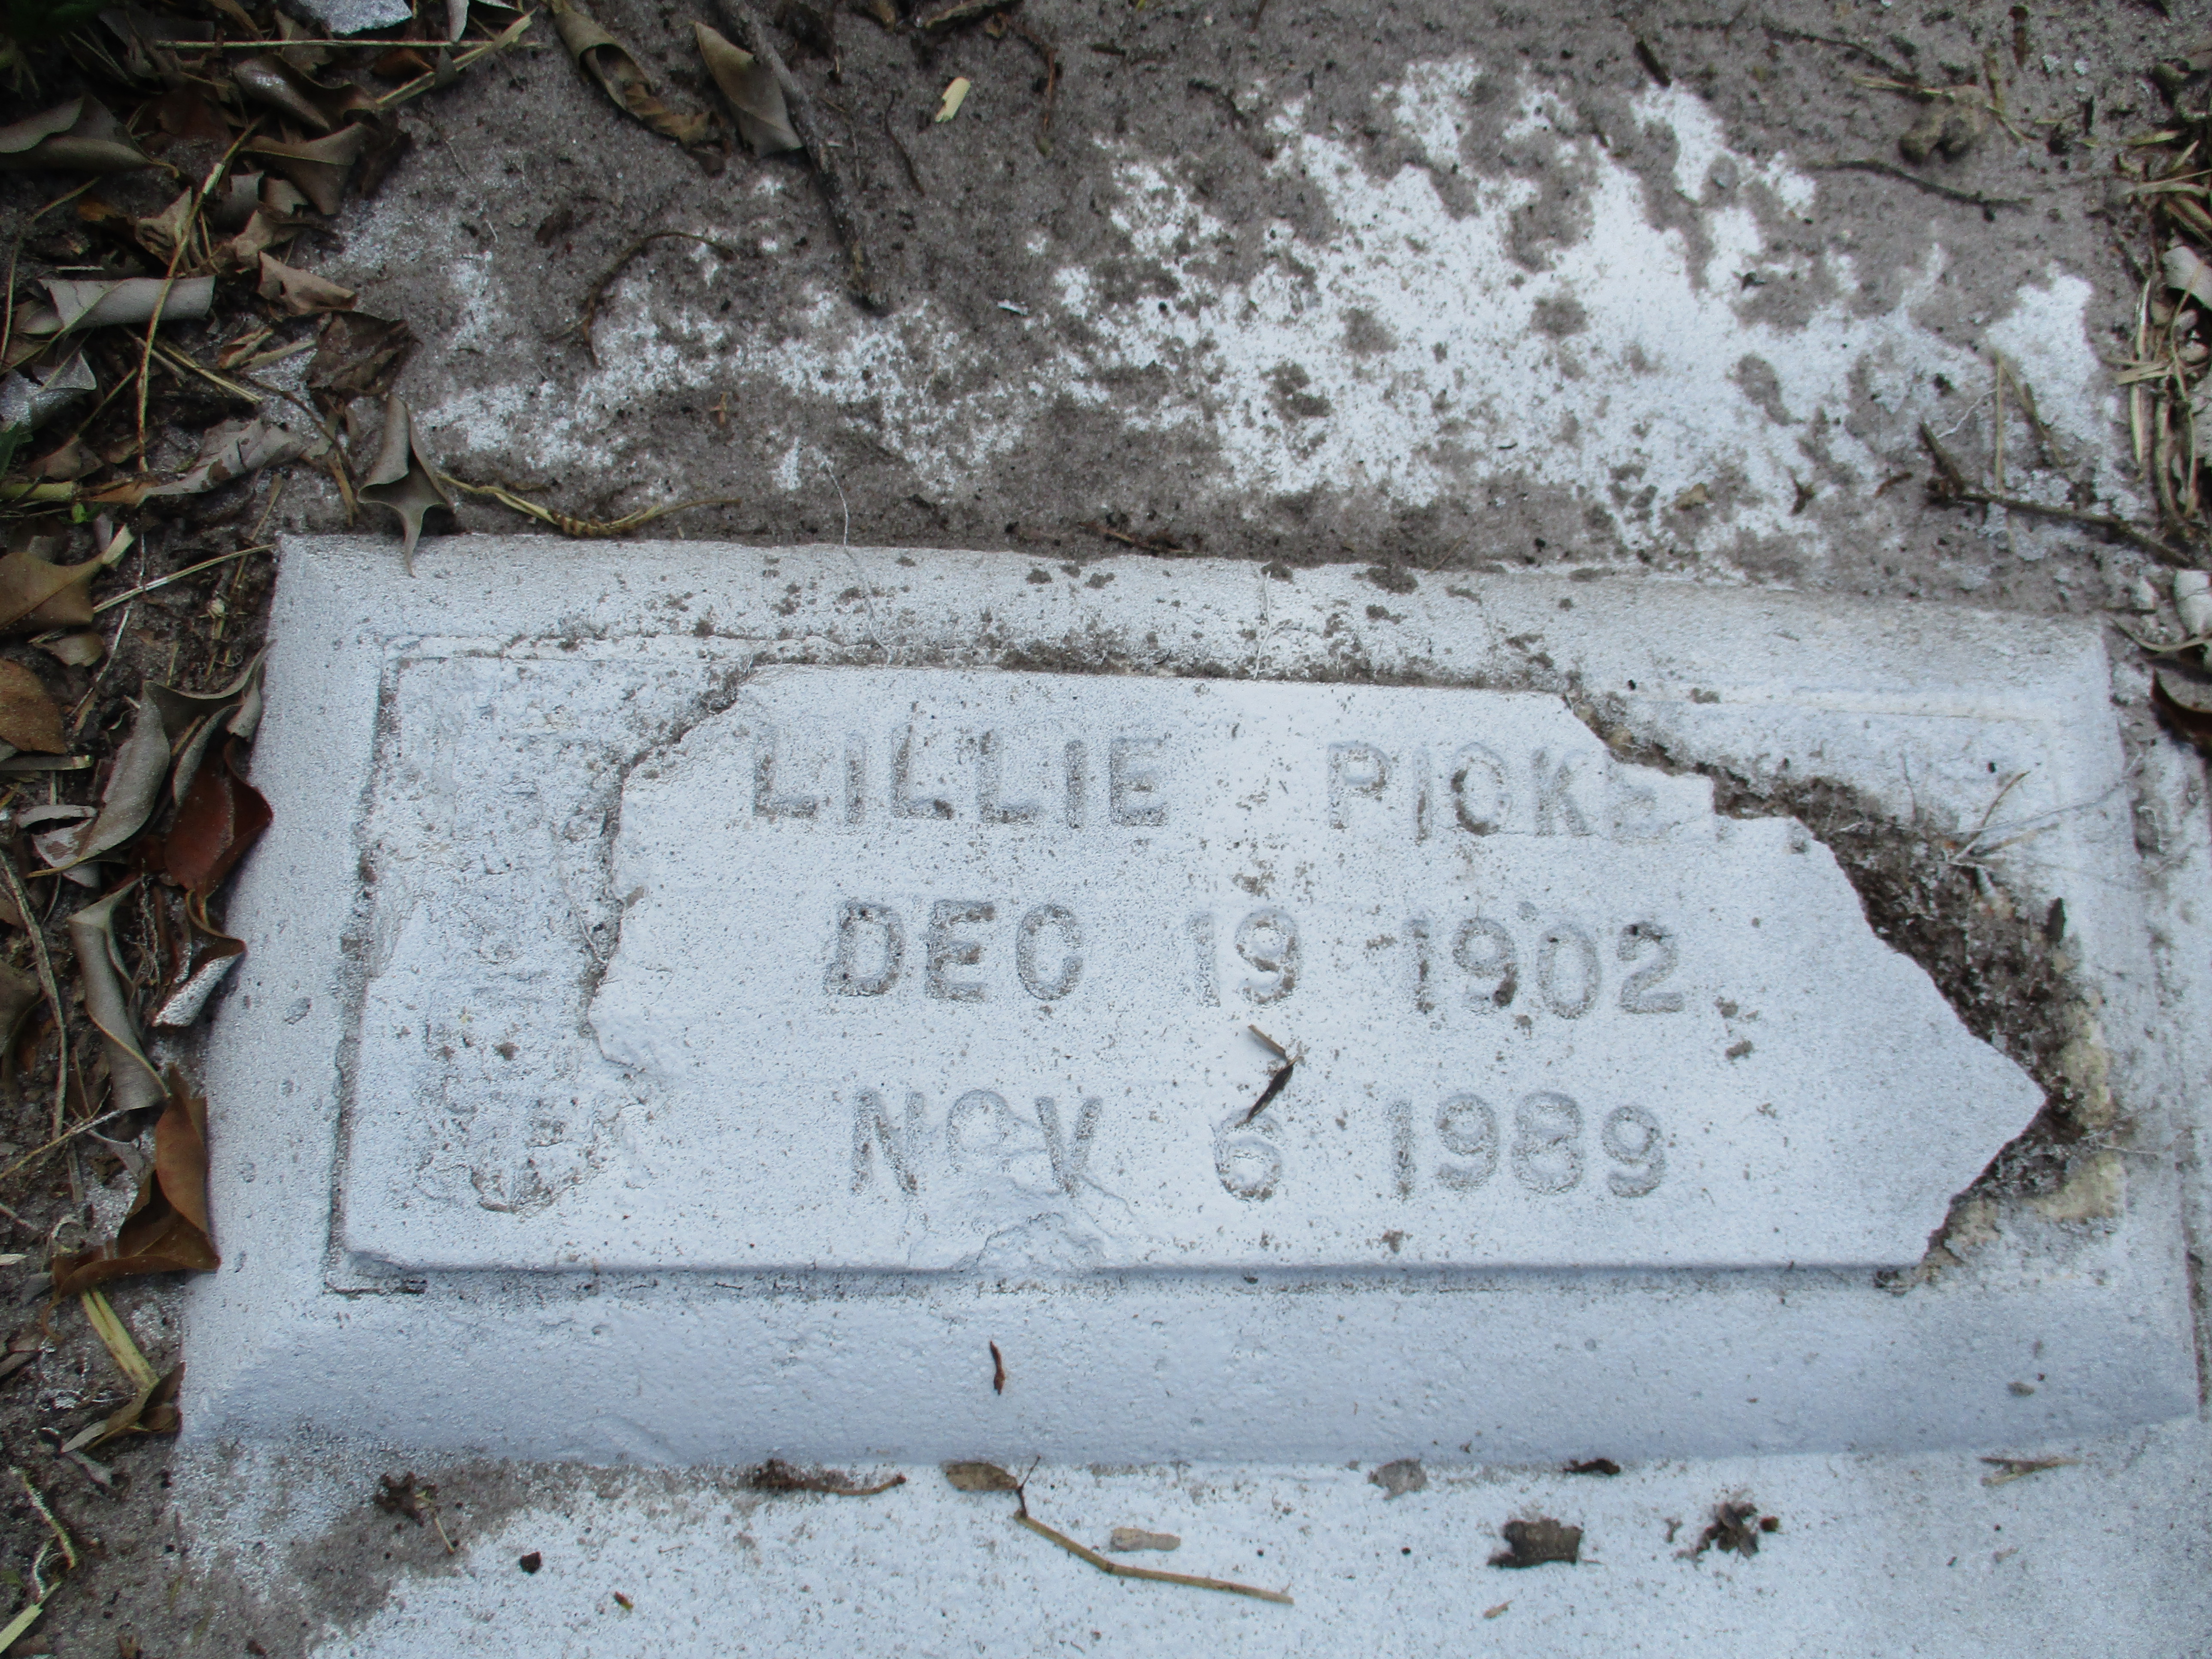 Lillie Pickett